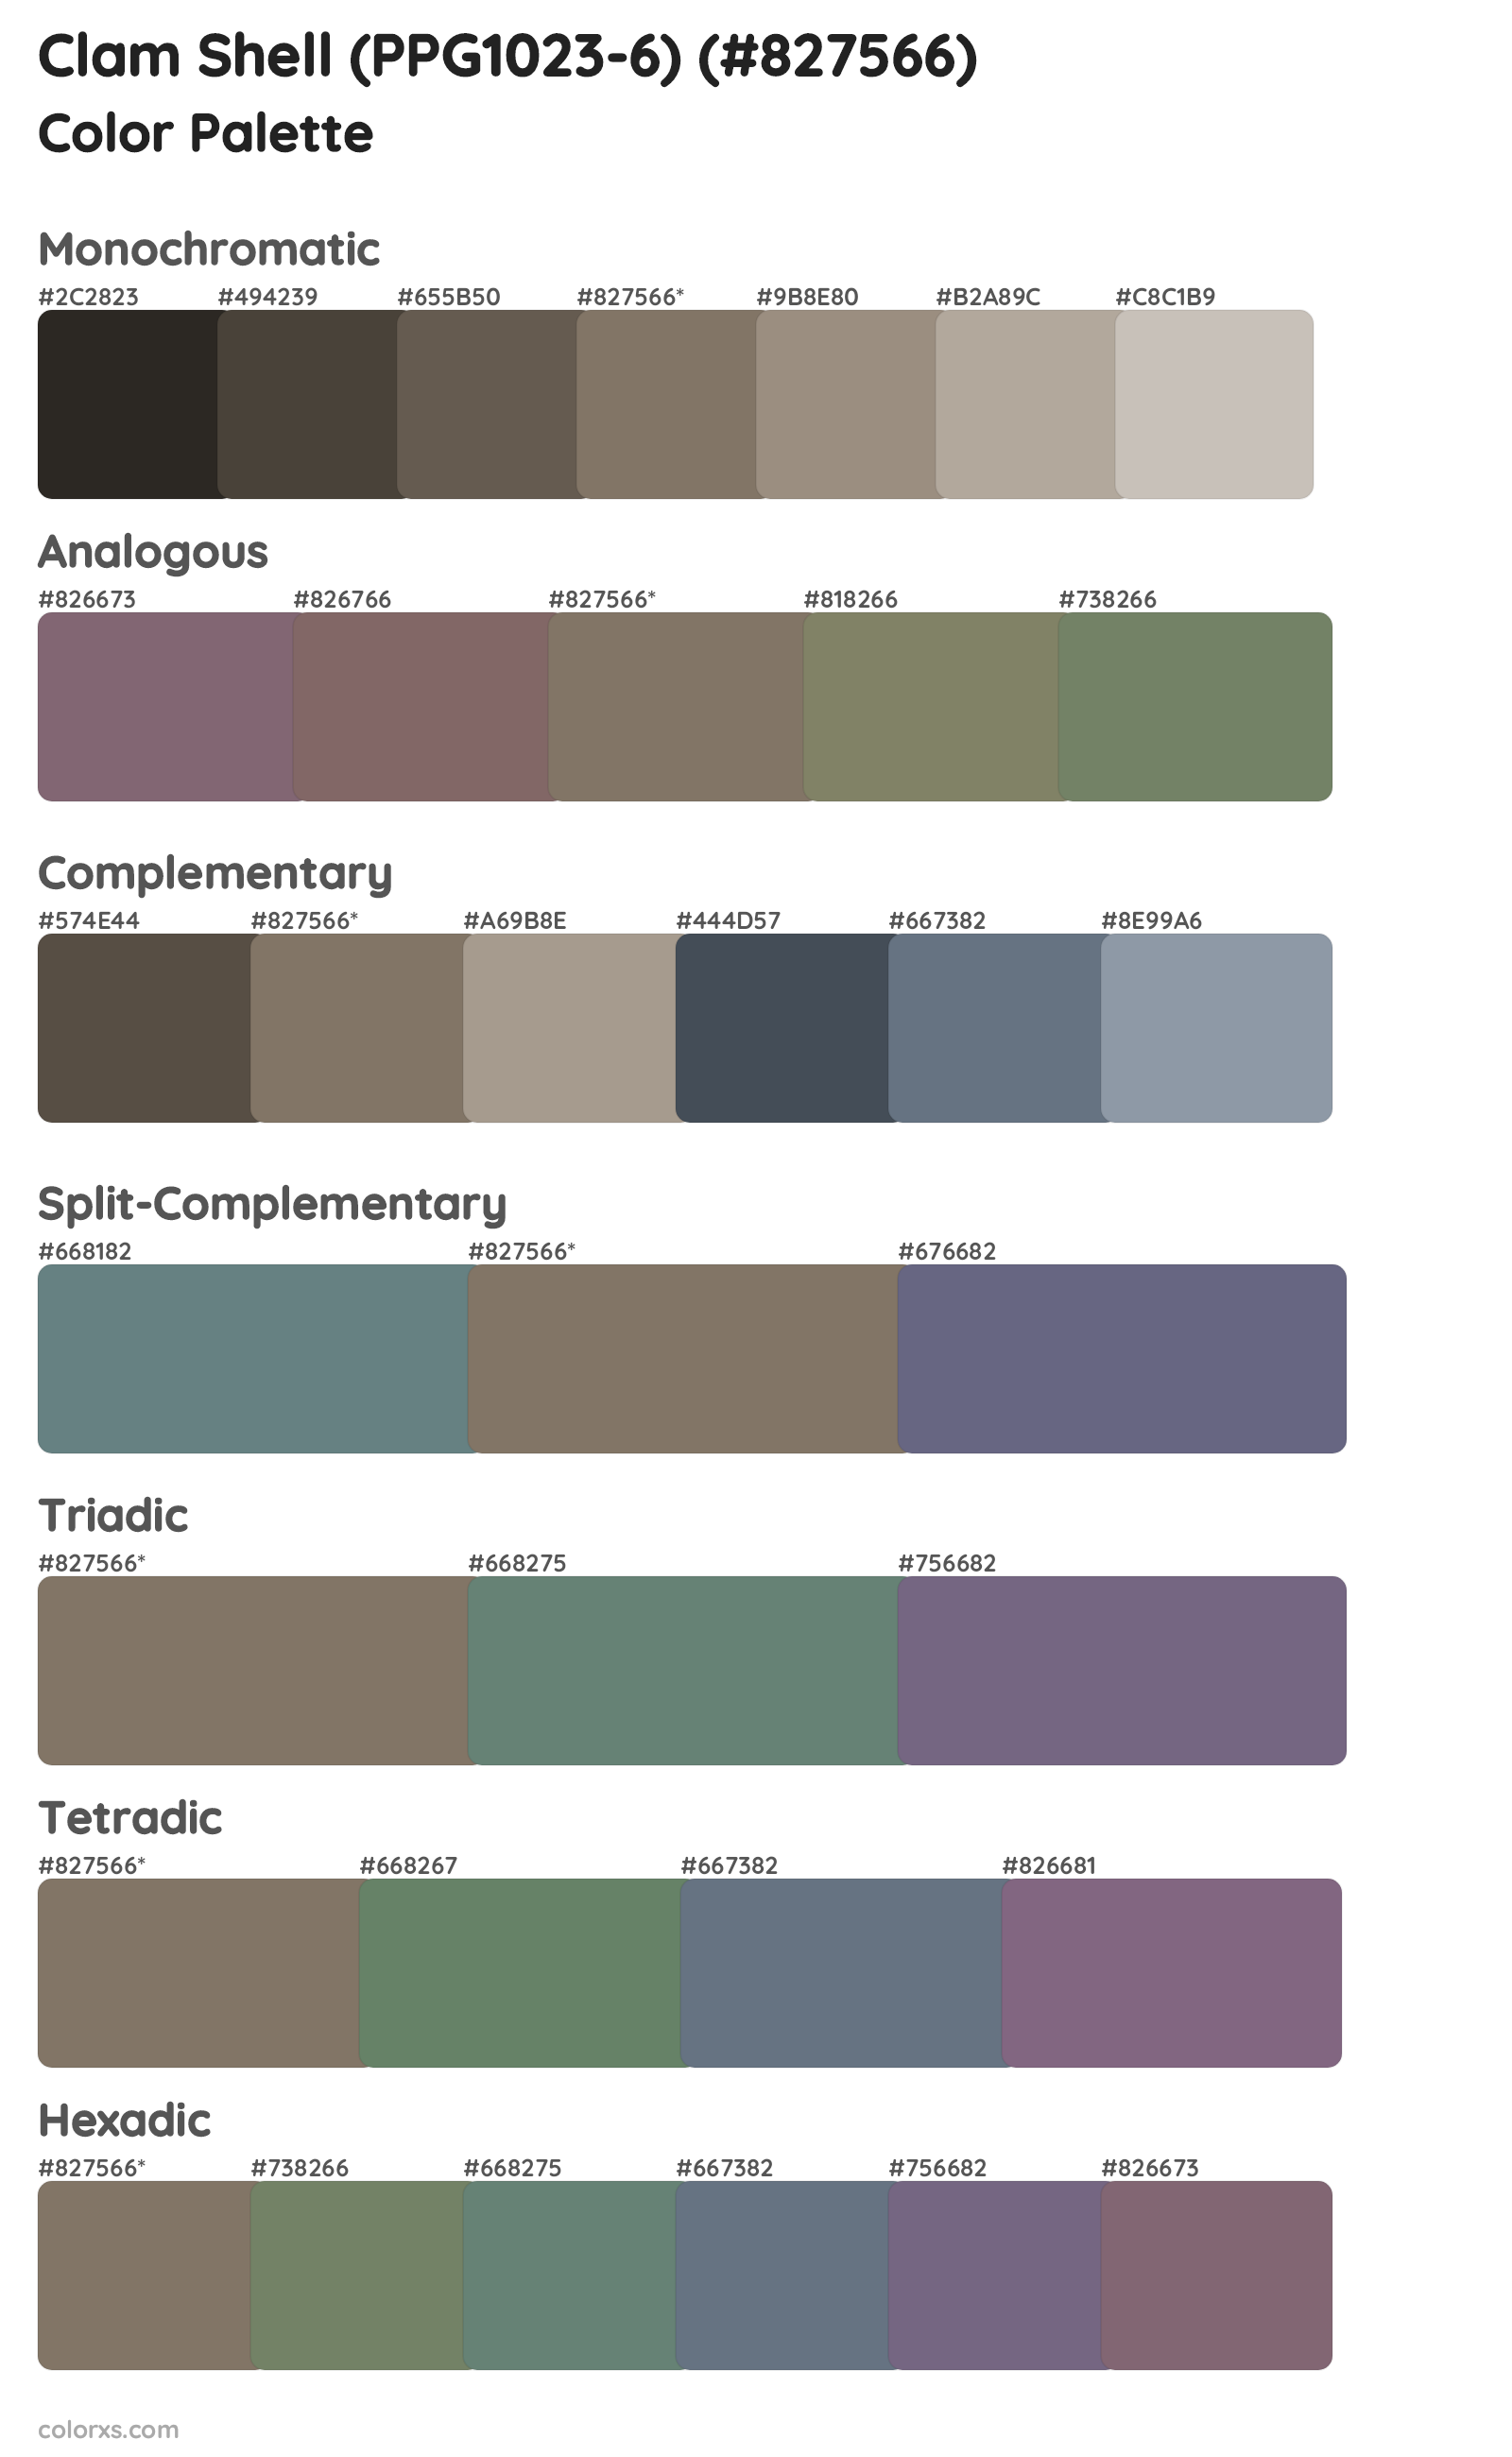 Clam Shell (PPG1023-6) Color Scheme Palettes